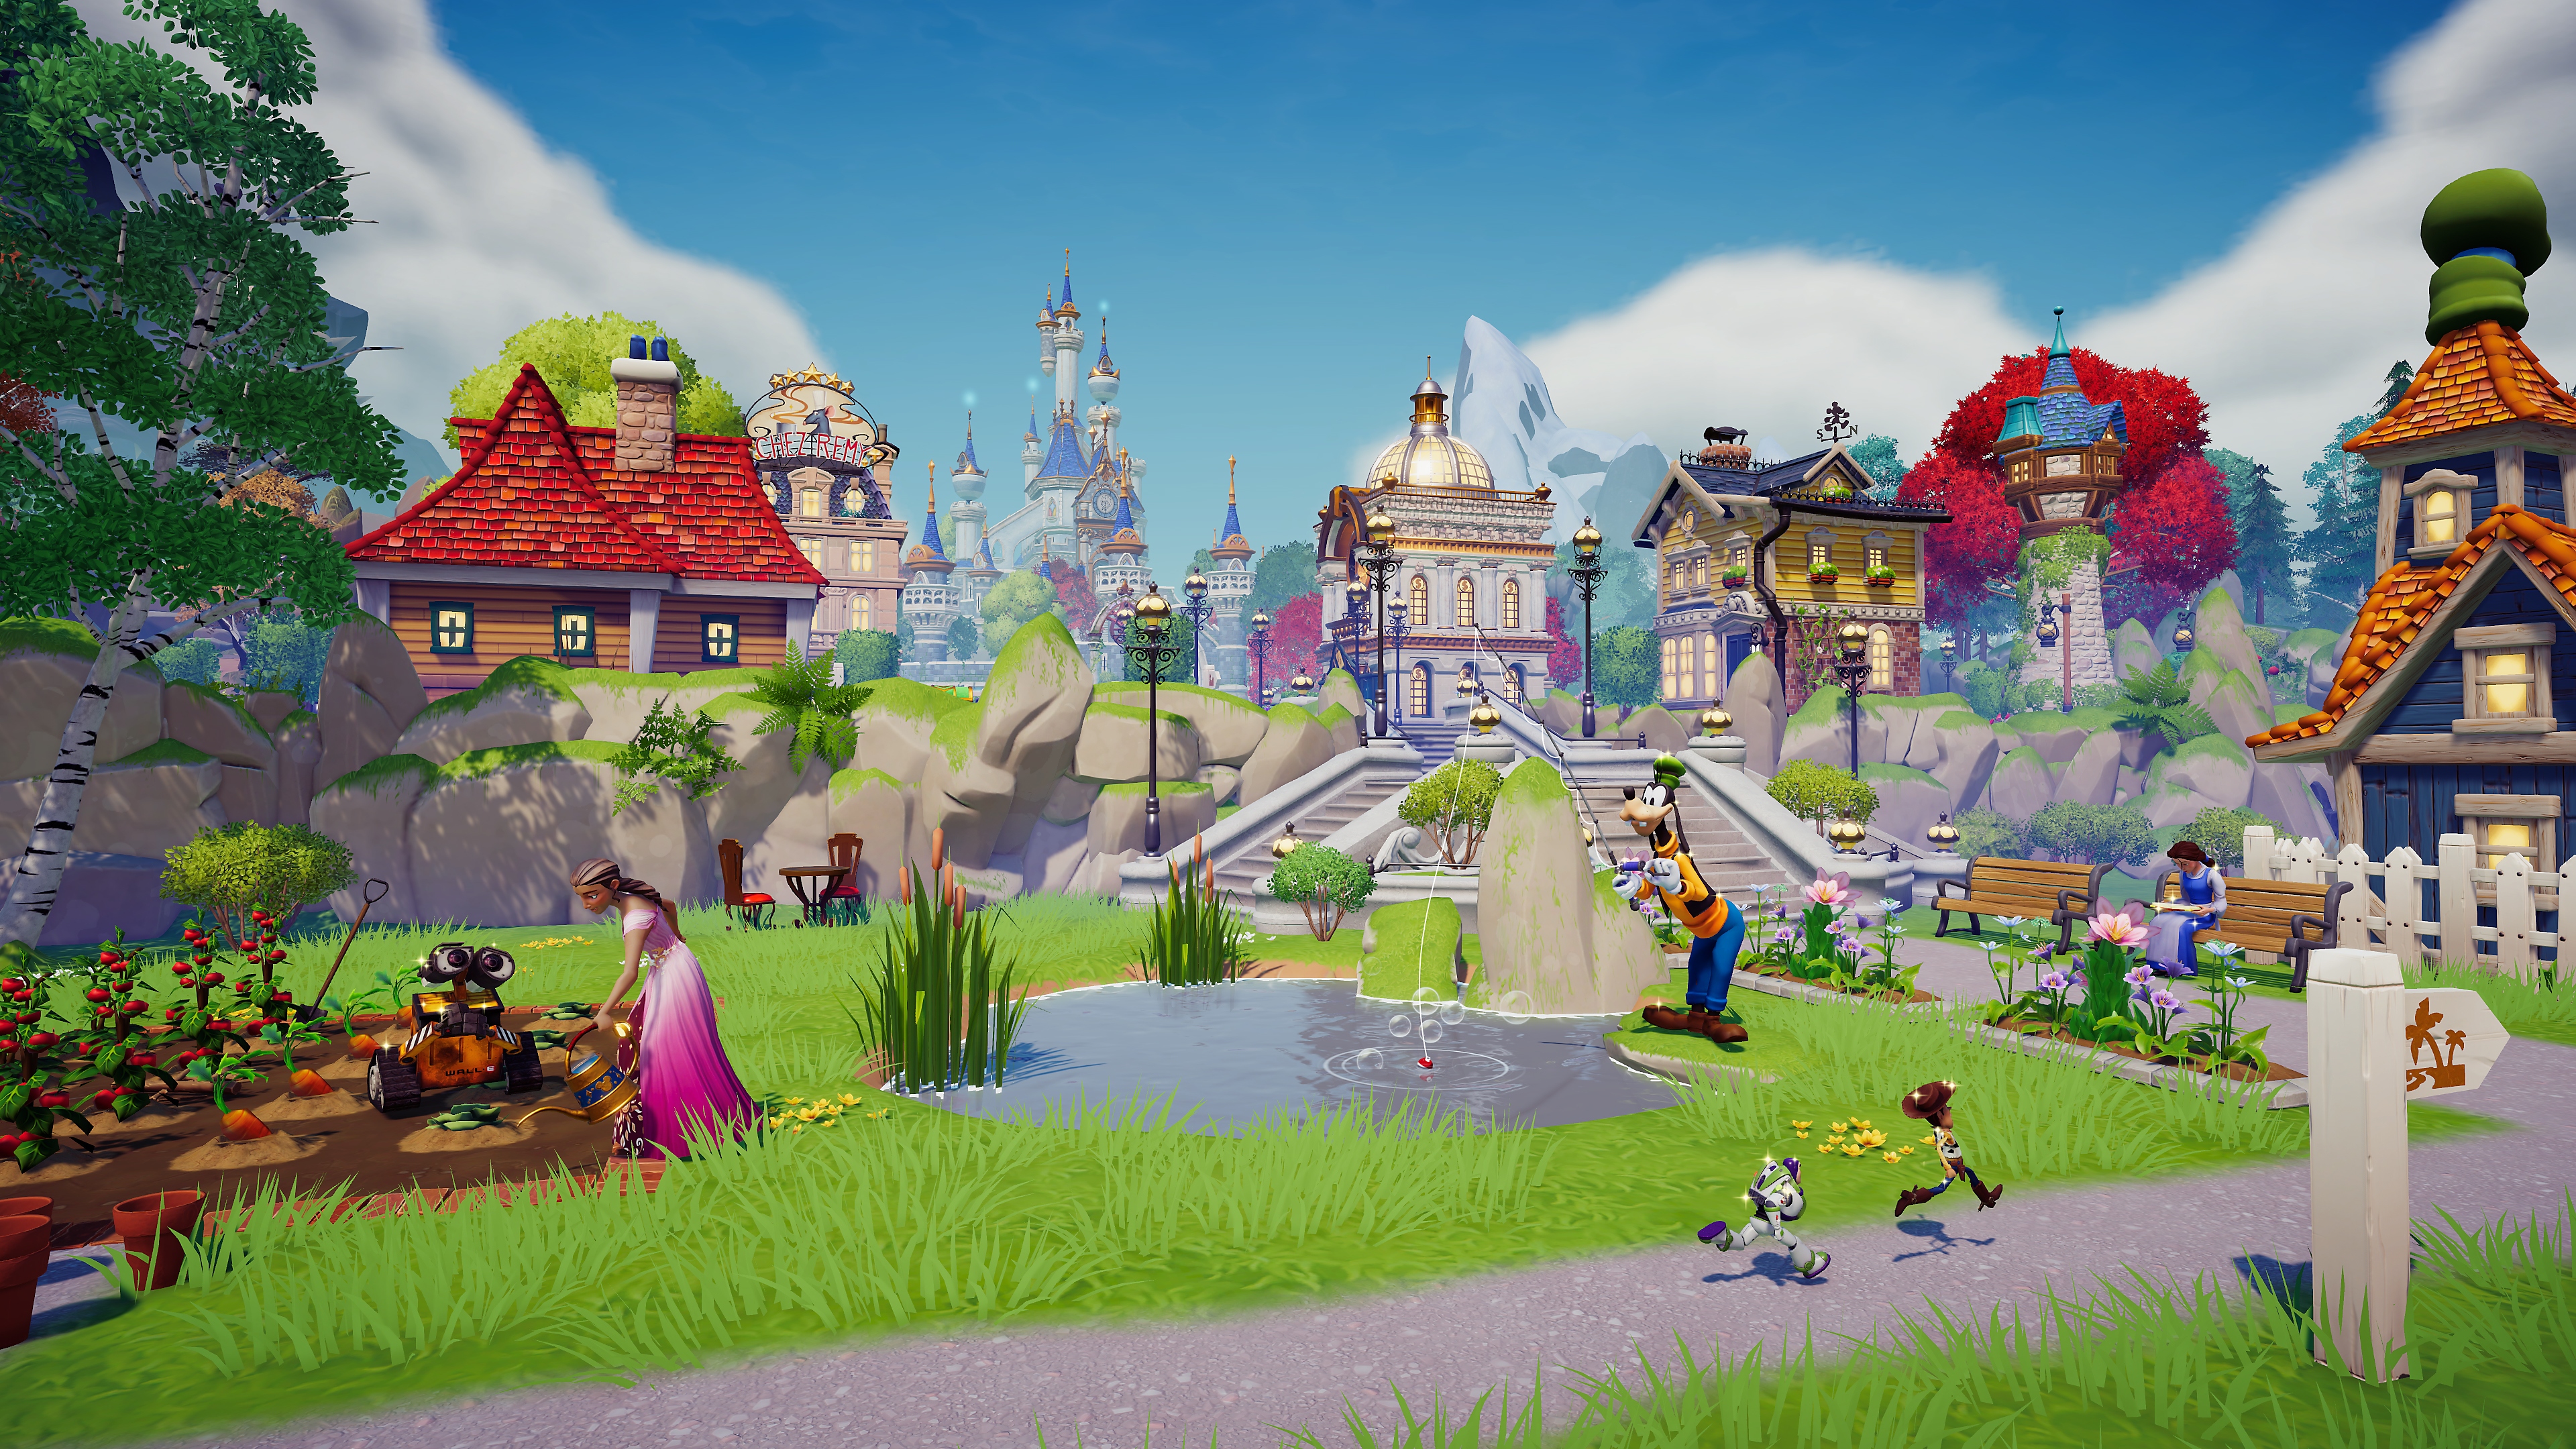 Disney Dreamlight Valley - Capture d'écran d'une scène dans un village